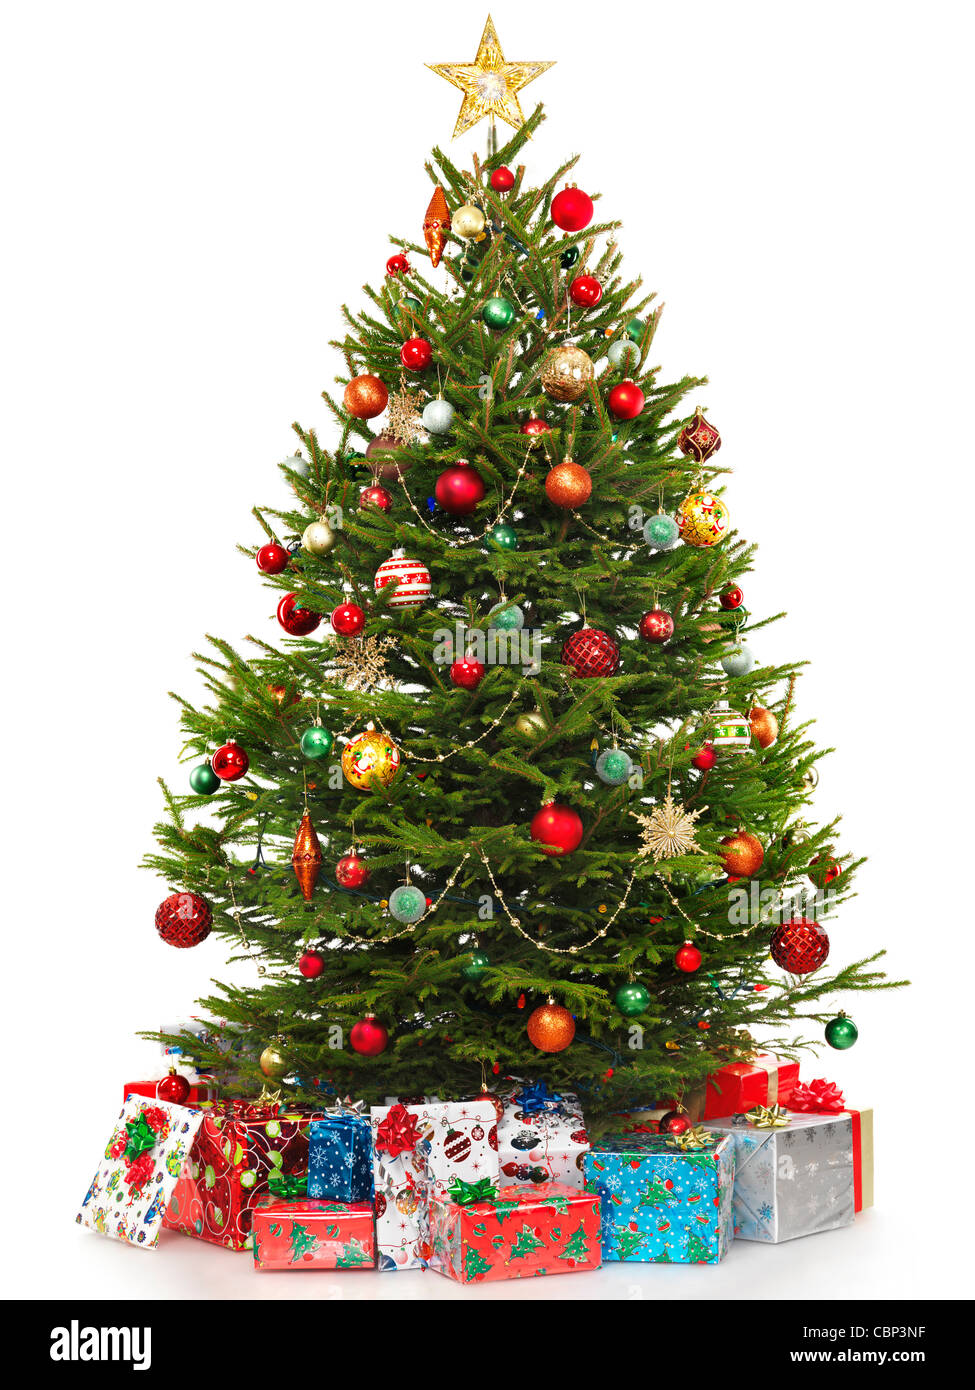 Hermoso árbol de navidad decorado con coloridos regalos envueltos bajo ella. Aislado sobre fondo blanco. Foto de stock